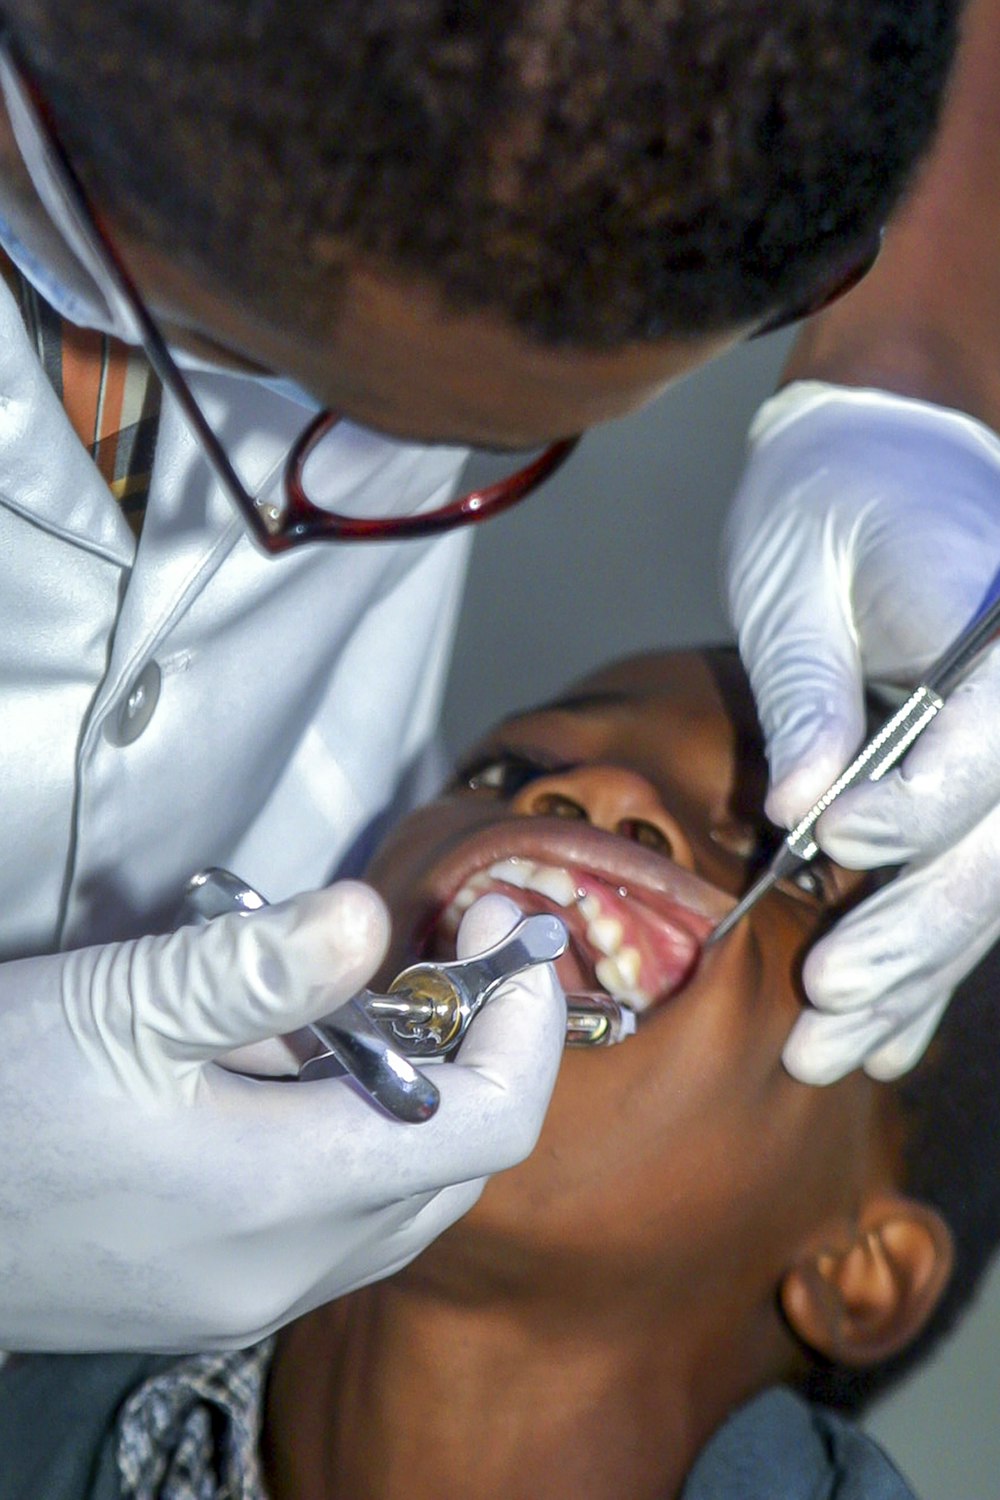 dentista sosteniendo una jeringa en la boca del niño